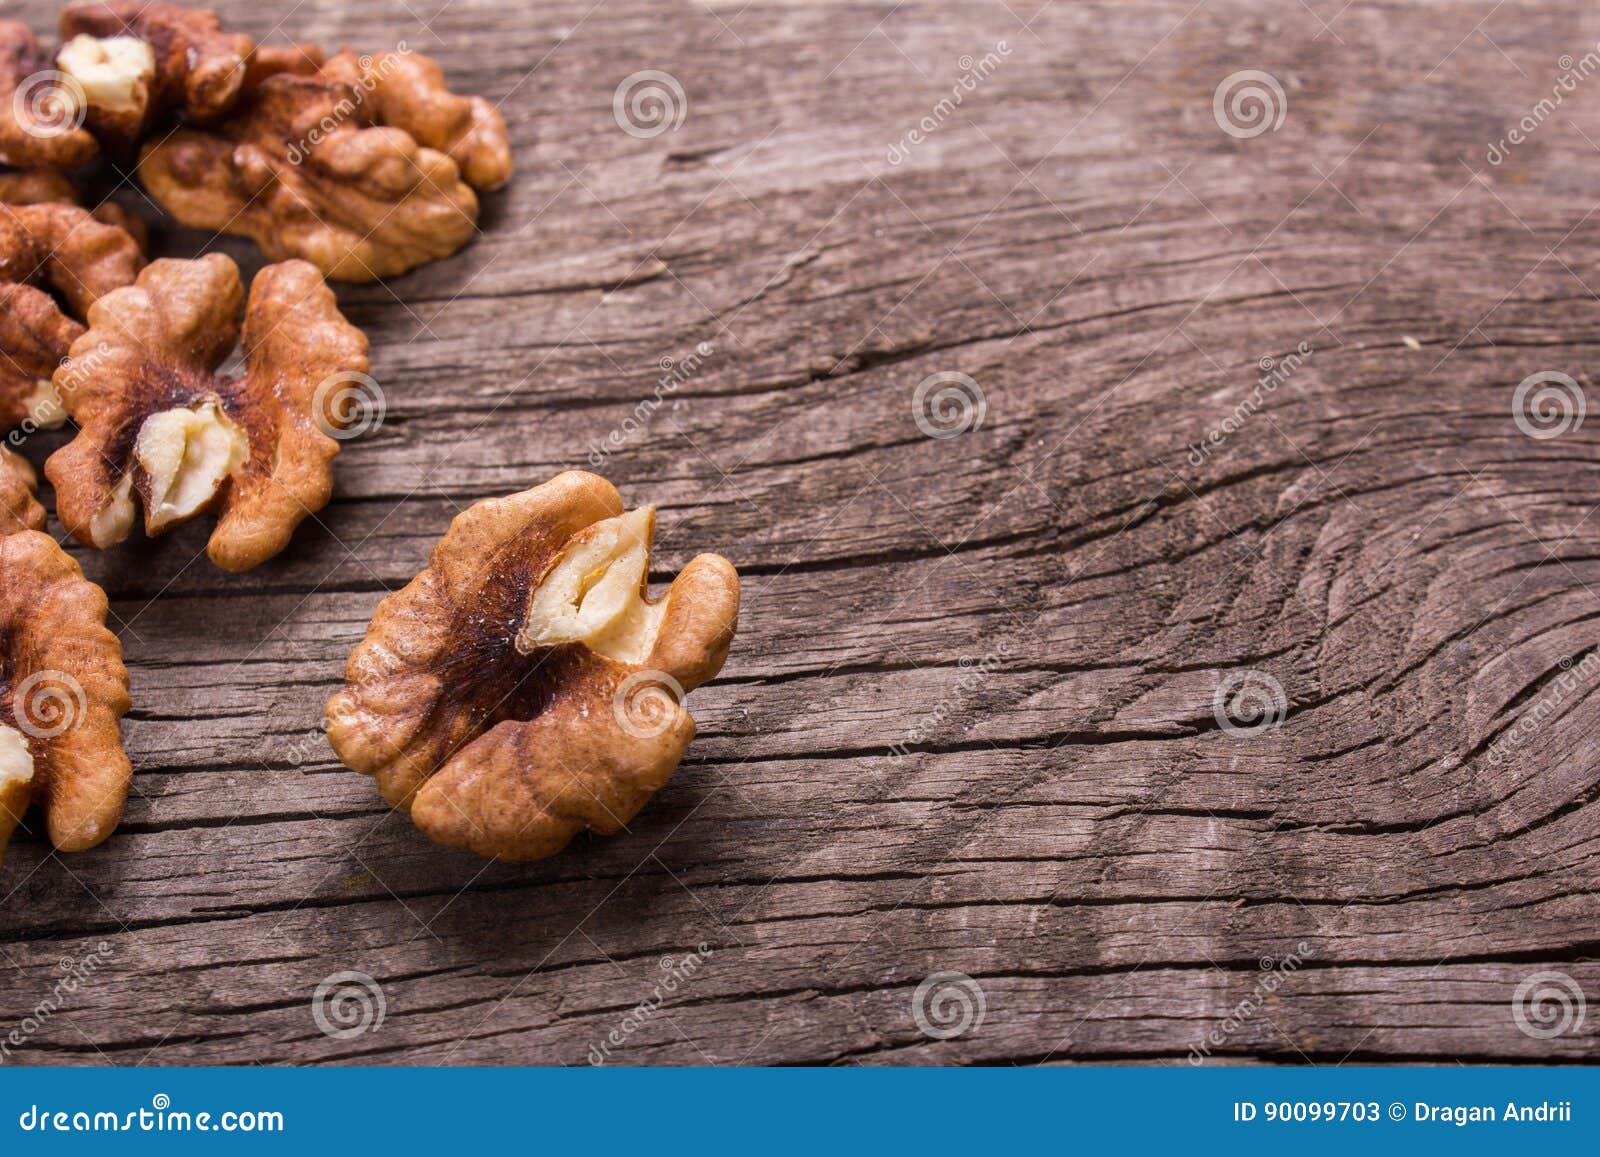 Слова что орехи без ядра